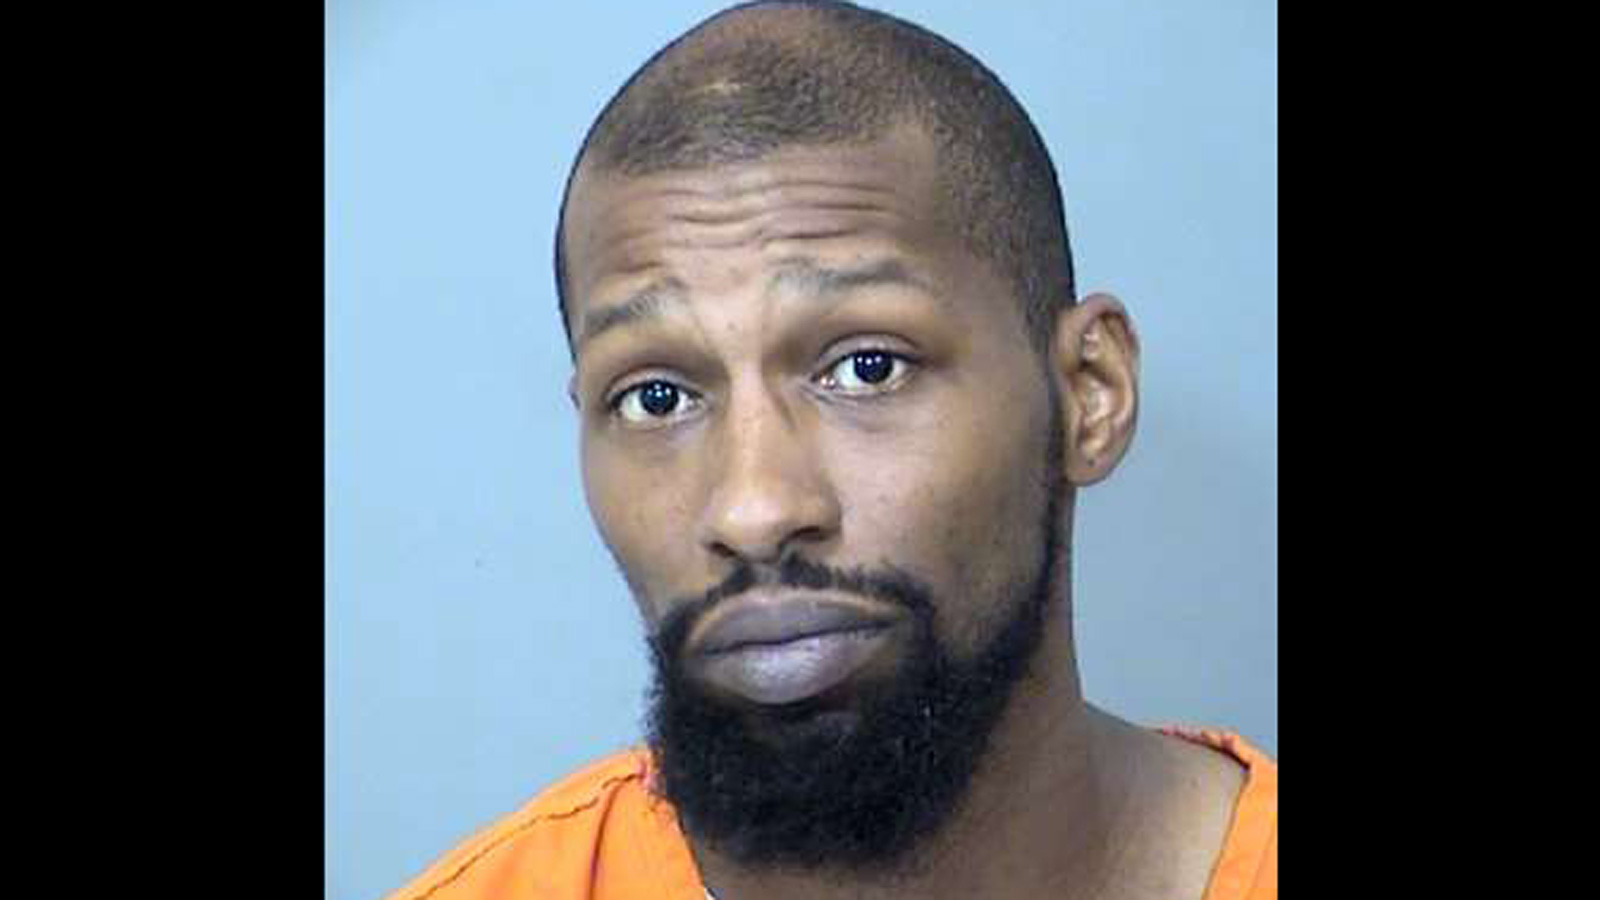 Jermaine Lamar Houston poses for mug shot after his arrest....